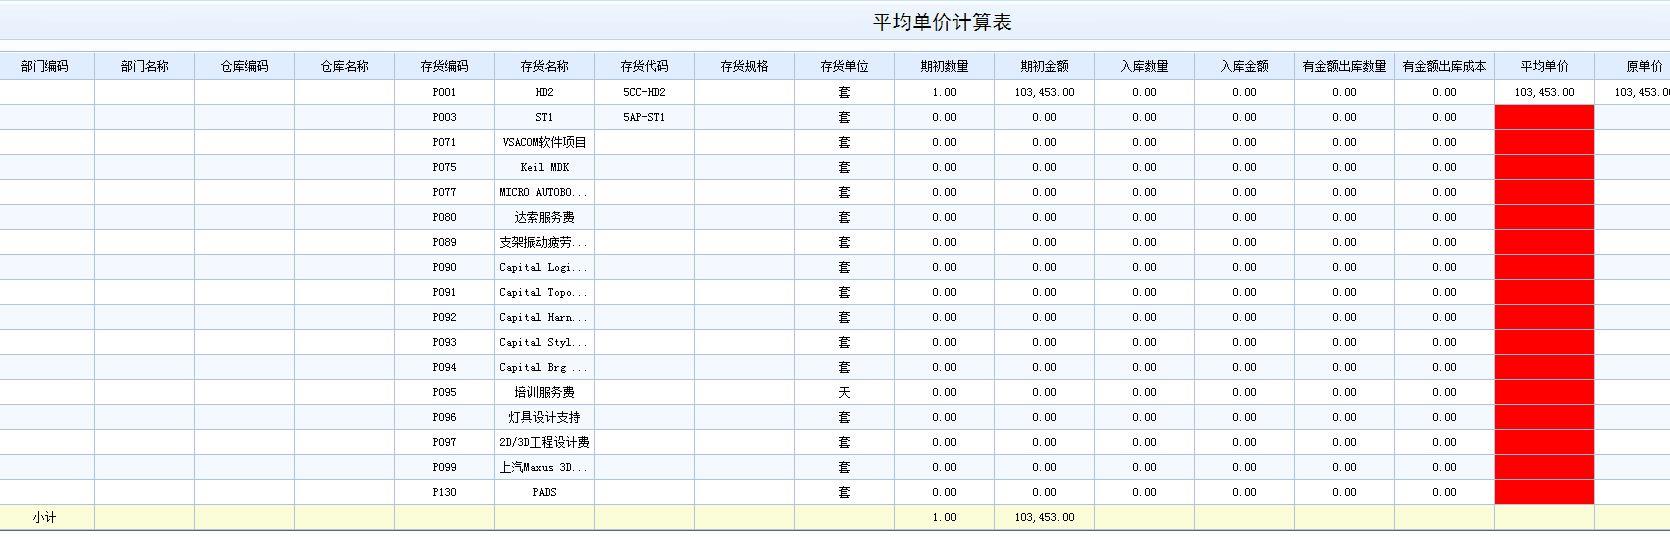 普联在国内财务软件公司排名
:惠安正版用友u8多少钱套